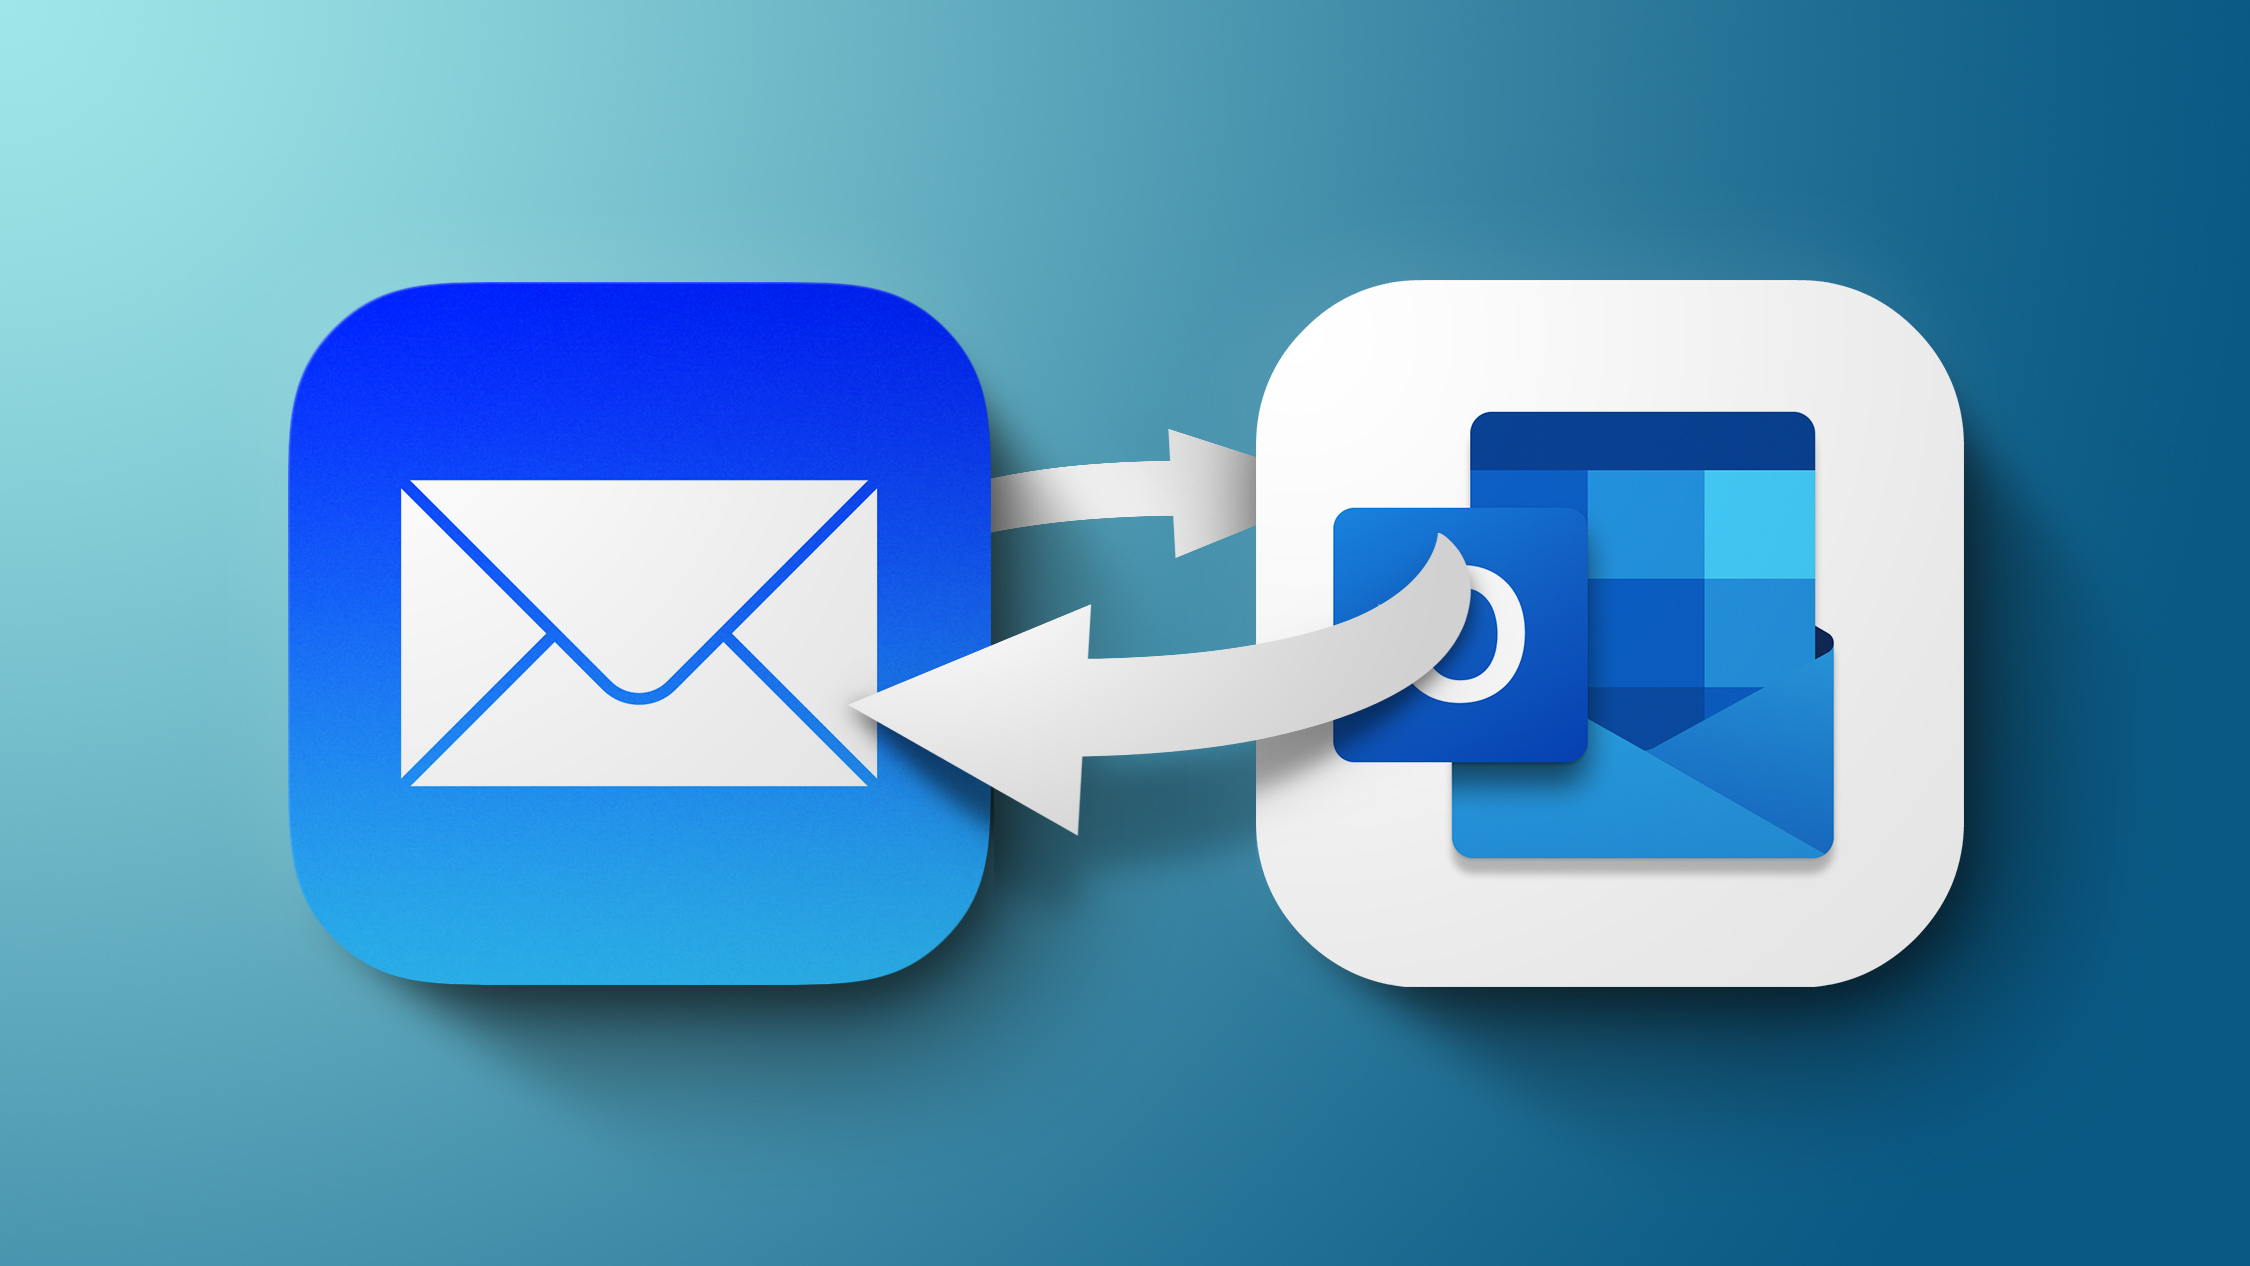 Профиль gmail. Почта IOS. Apple mail (программа). Обновление по картинки. Стандартные картинки профилей gmail и Samsung.